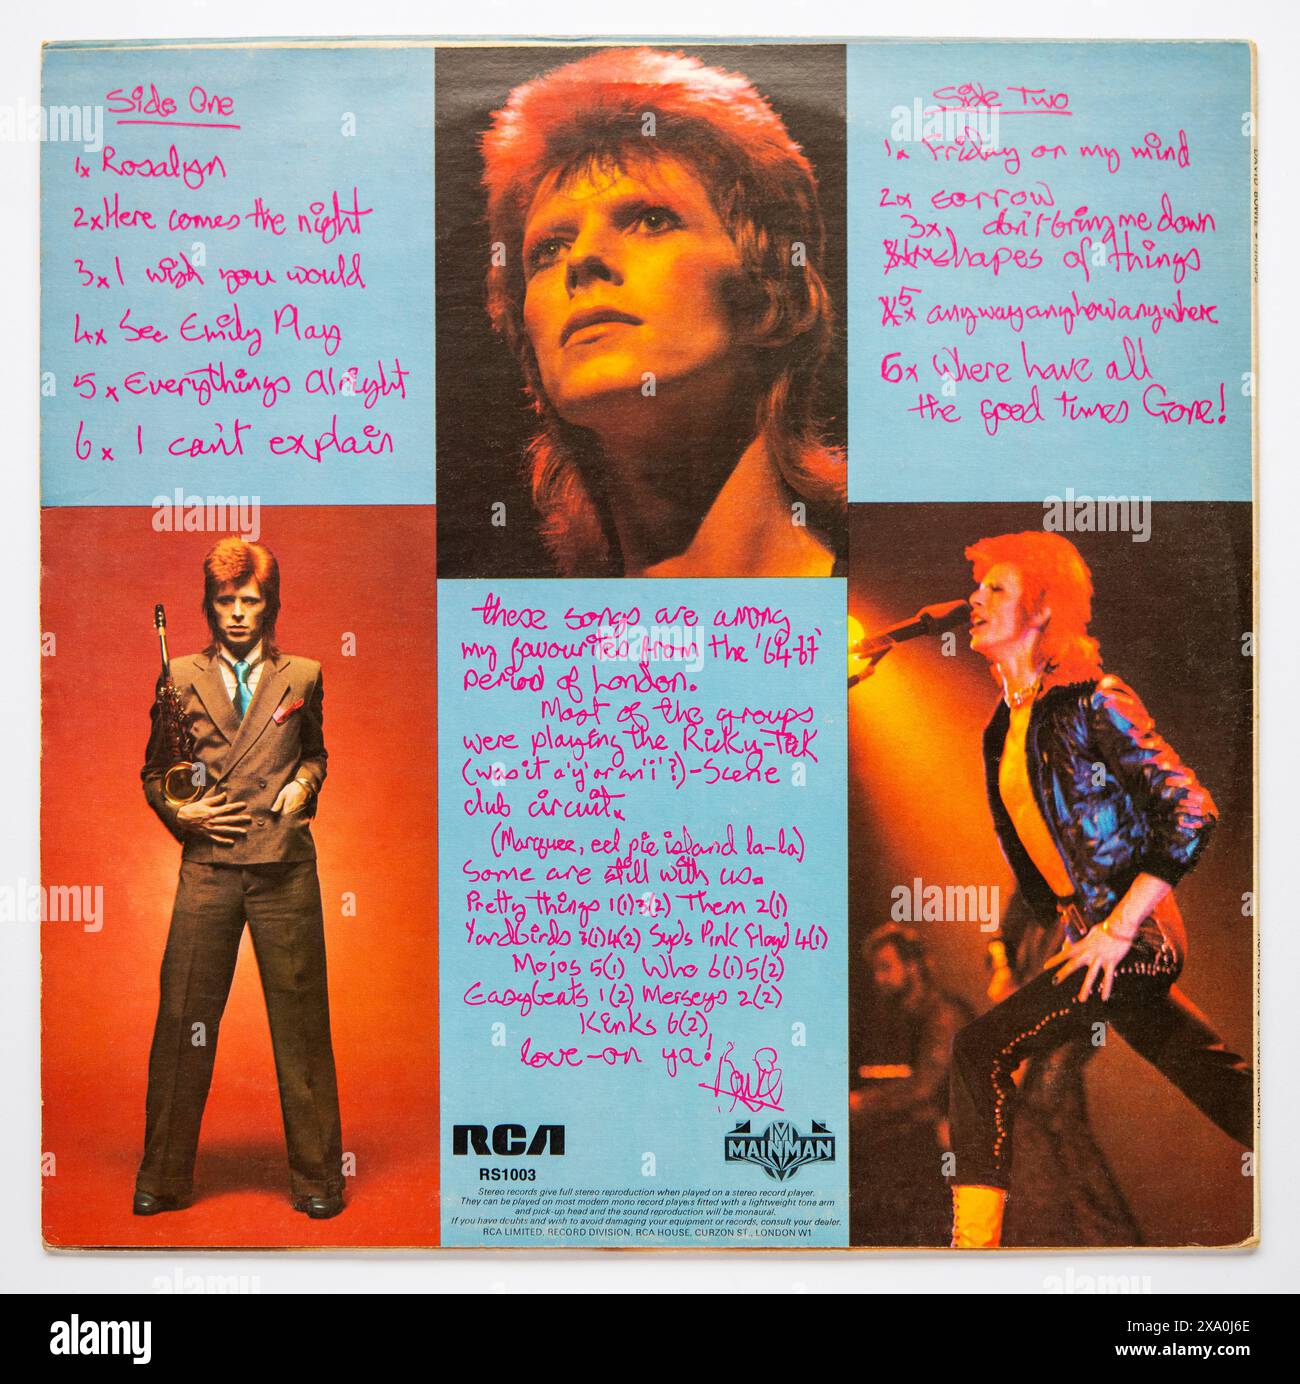 Couverture arrière de PIN ups, le septième album studio de David Bowie, sorti en 1973 Banque D'Images